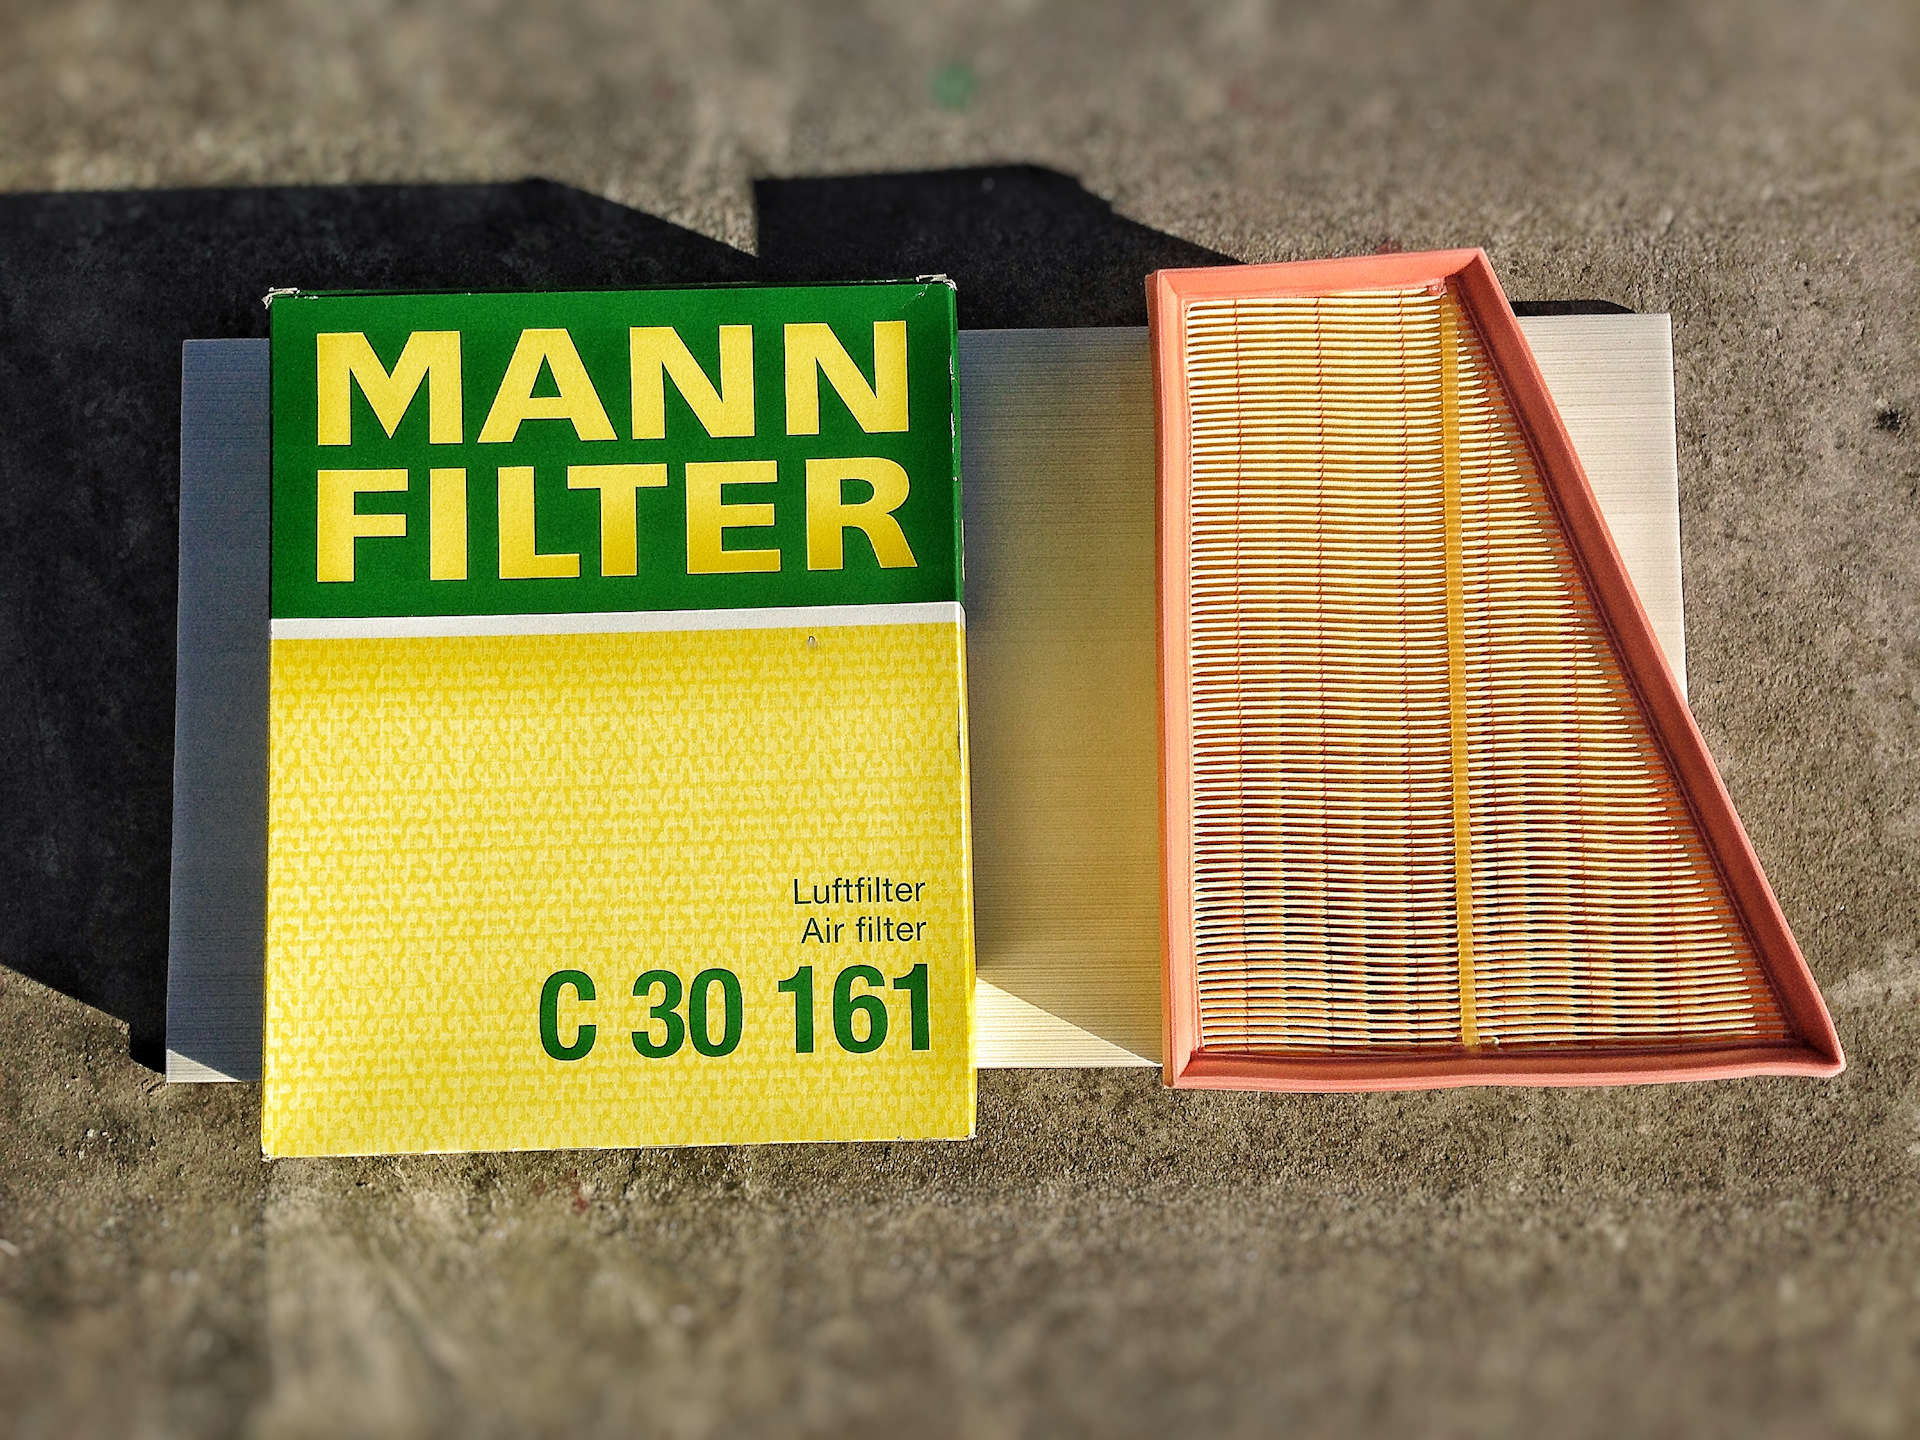 Mann filter воздушный фильтр. Mann c30161 воздушный фильтр. Воздушный фильтр Mann-Filter c42003. Фильтр воздушный Mann Filter c 321900/2. Фильтр воздушный Манн Мондео 4.